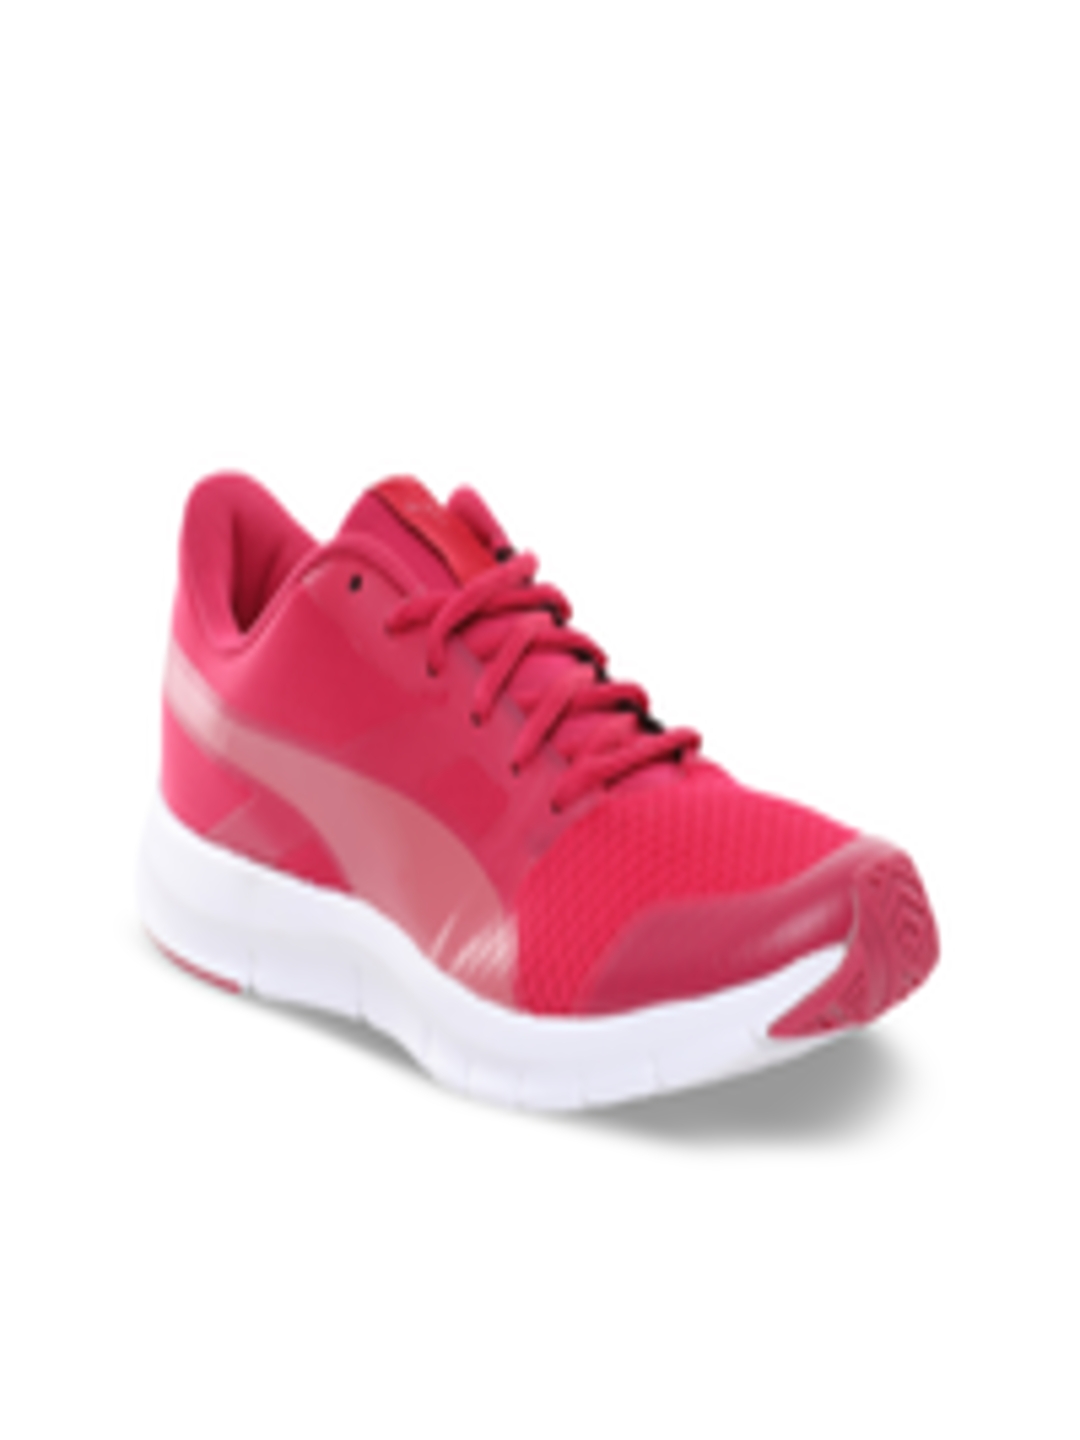 Buy Puma Women Pink Running Shoes - Sports Shoes for Women 2230396 | Myntra